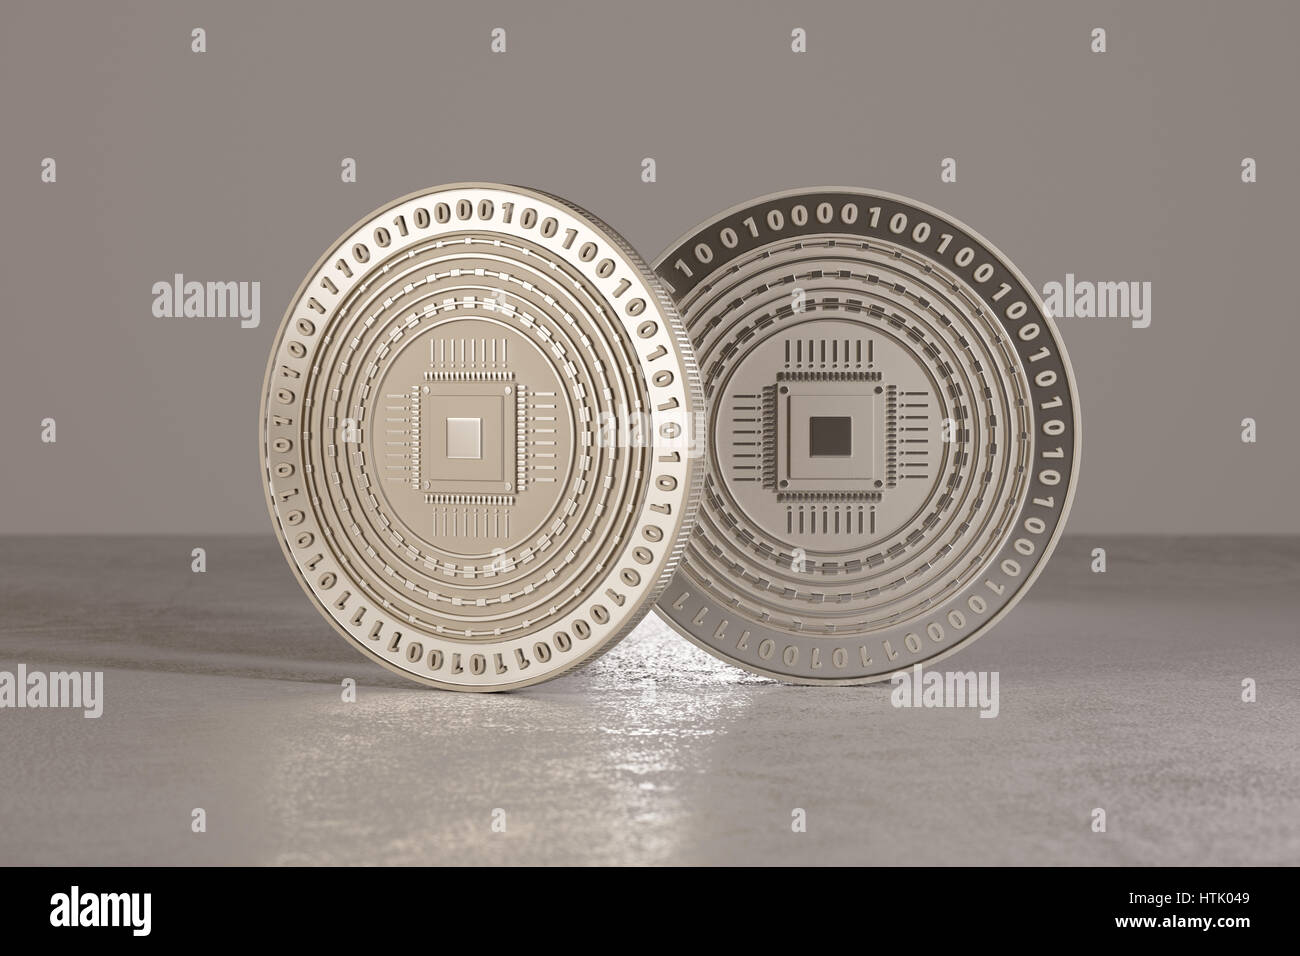 Digitalen Krypto-Währung Silbermünzen auf Metall-Boden stehen als Beispiel für virtuelle Währung und Fin-tech Stockfoto